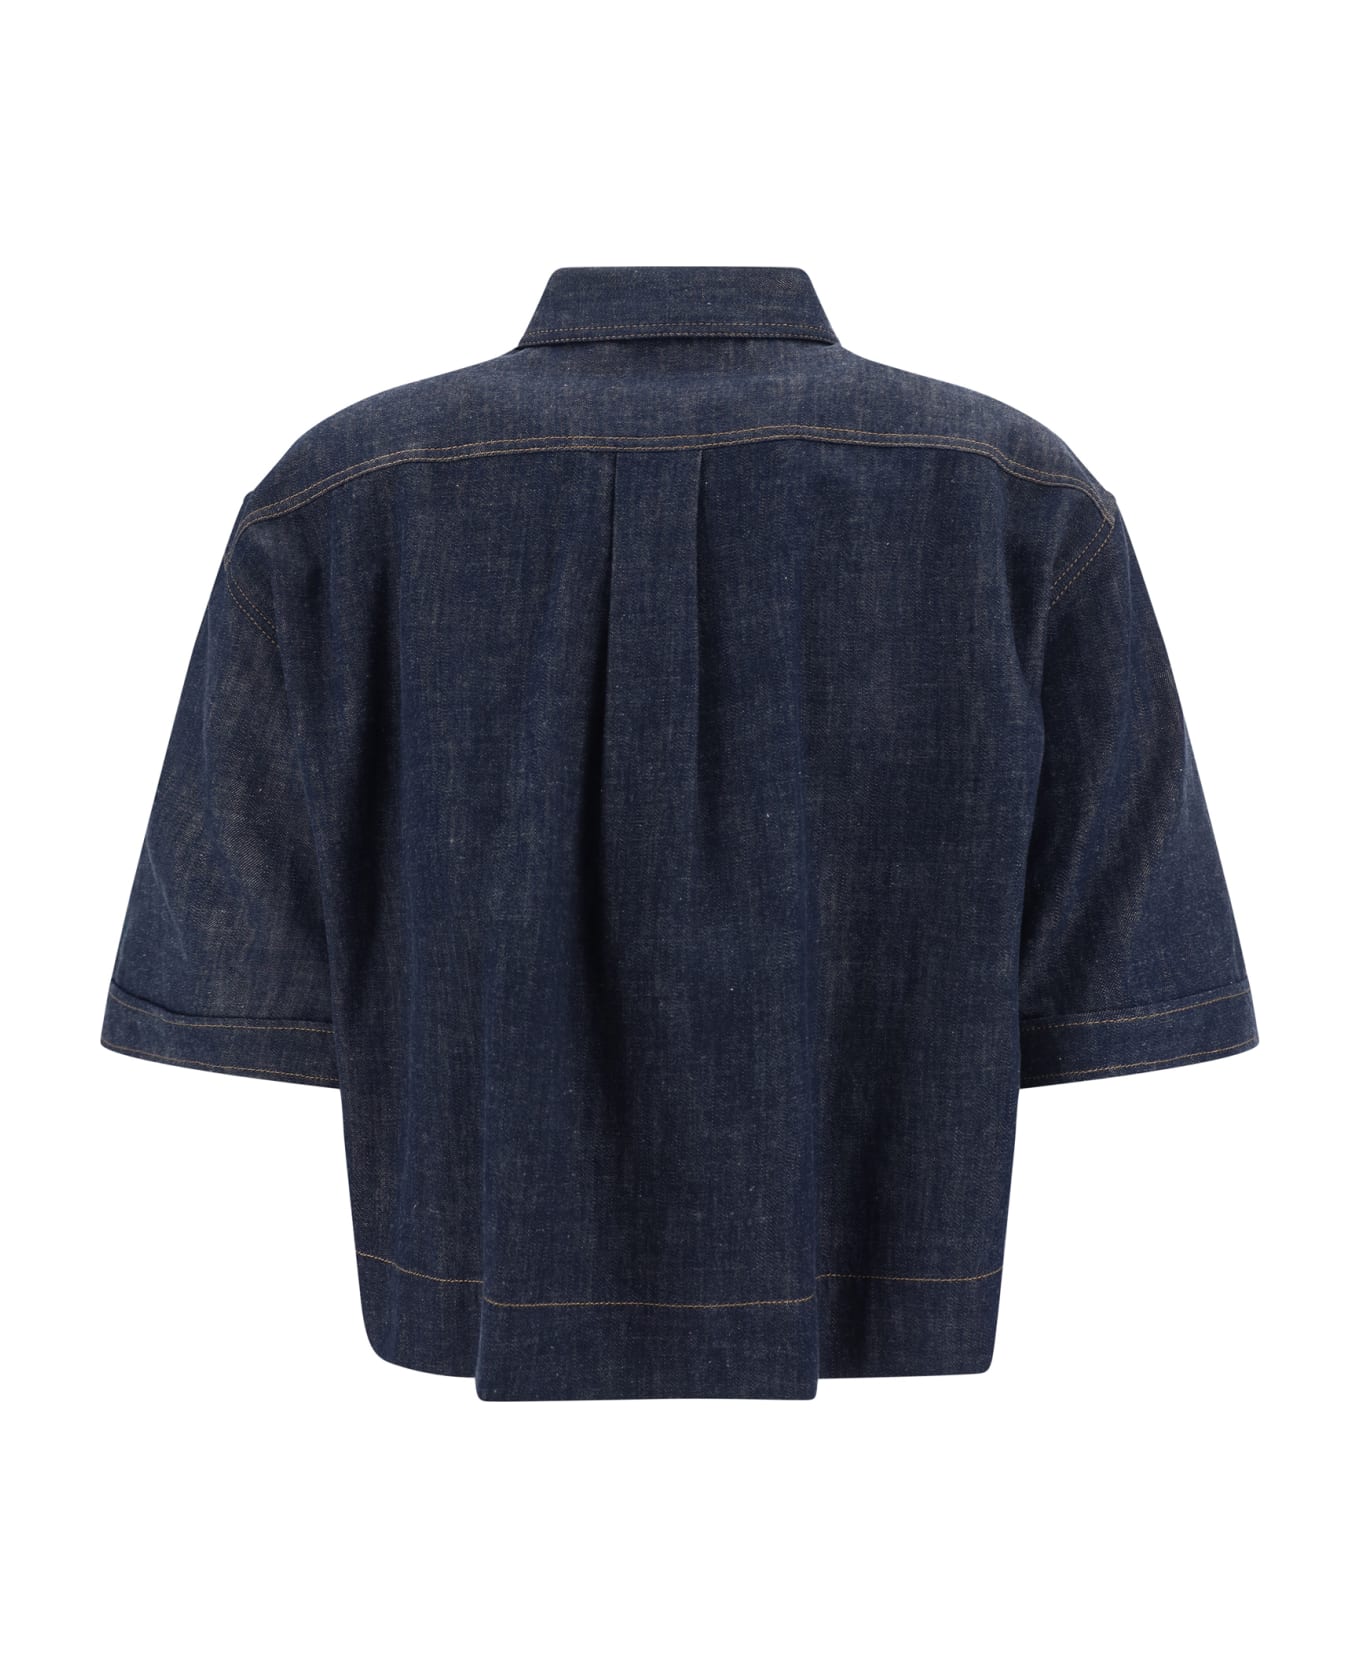 Brunello Cucinelli Denim Shirt - Blu シャツ